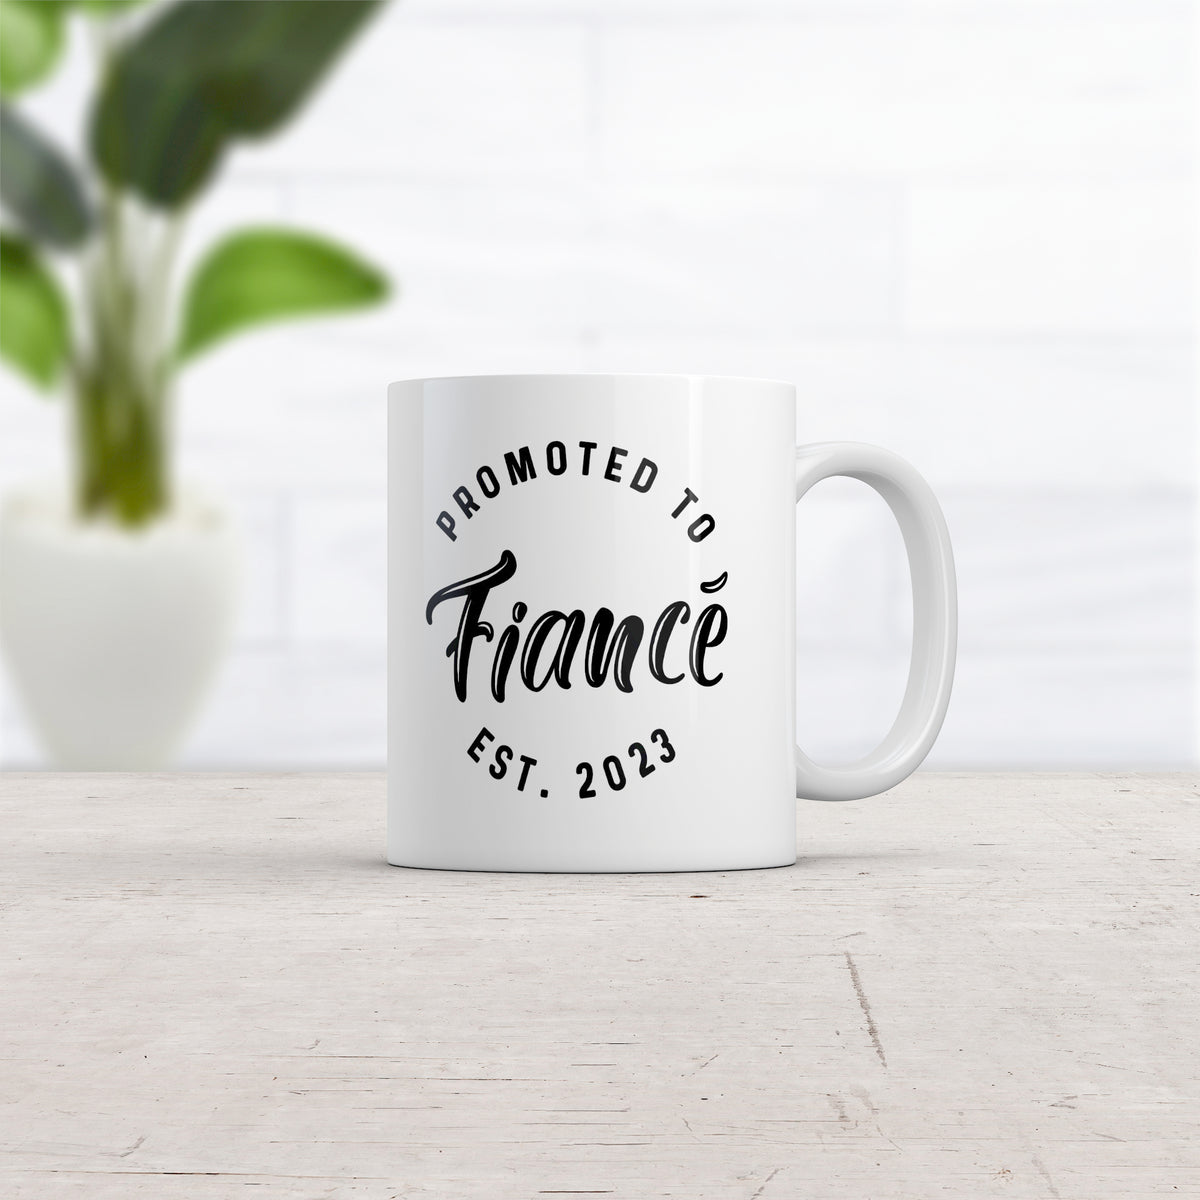 Promoted To Fiance 2023 Mug